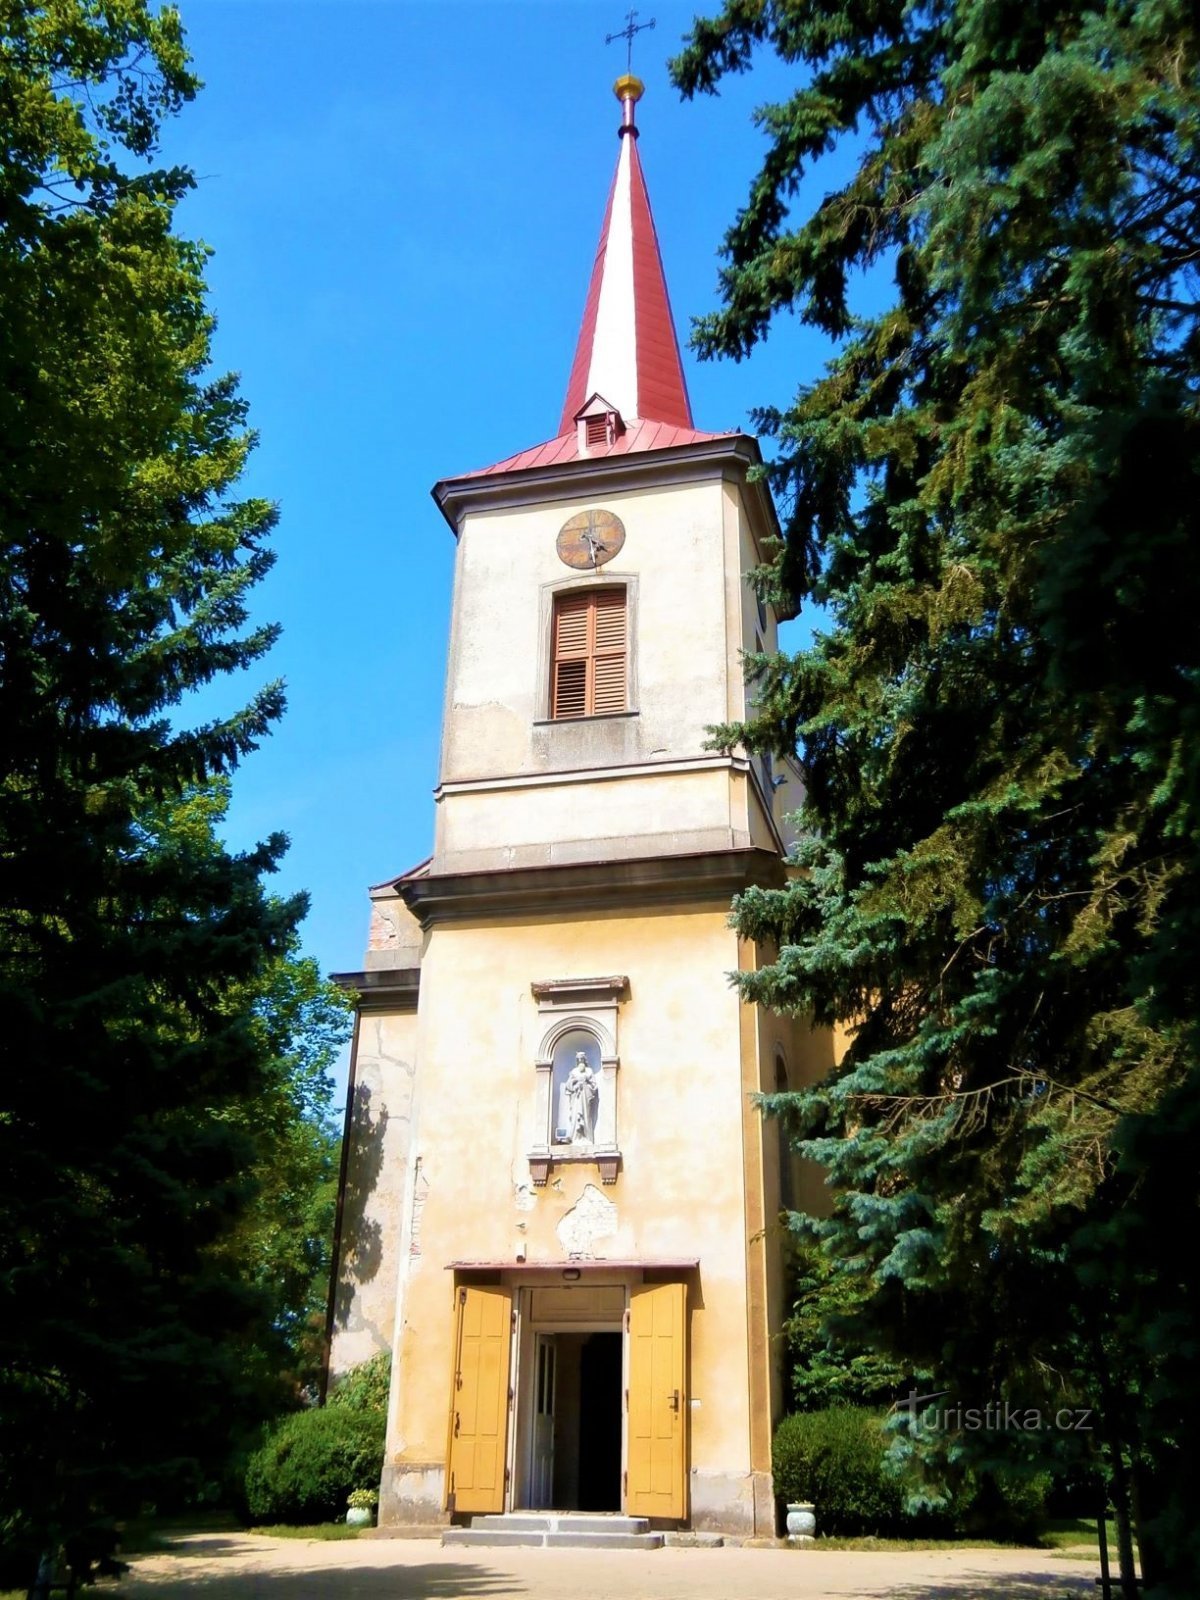 Kirche St. Štěpán (Černilov, 22.7.2017. Juli XNUMX)